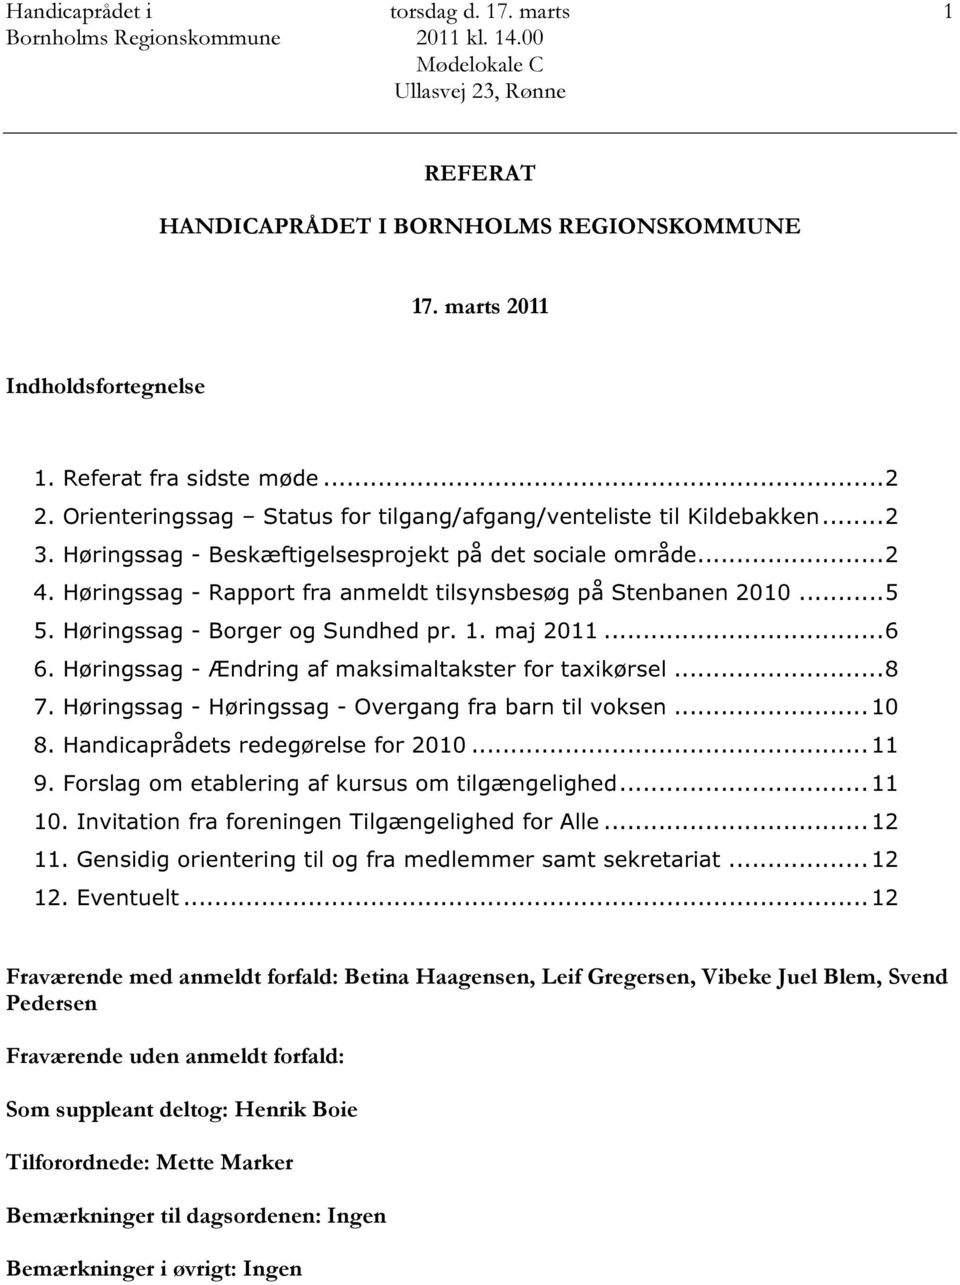 Høringssag - Rapport fra anmeldt tilsynsbesøg på Stenbanen 2010...5 5. Høringssag - Borger og Sundhed pr. 1. maj 2011...6 6. Høringssag - Ændring af maksimaltakster for taxikørsel...8 7.